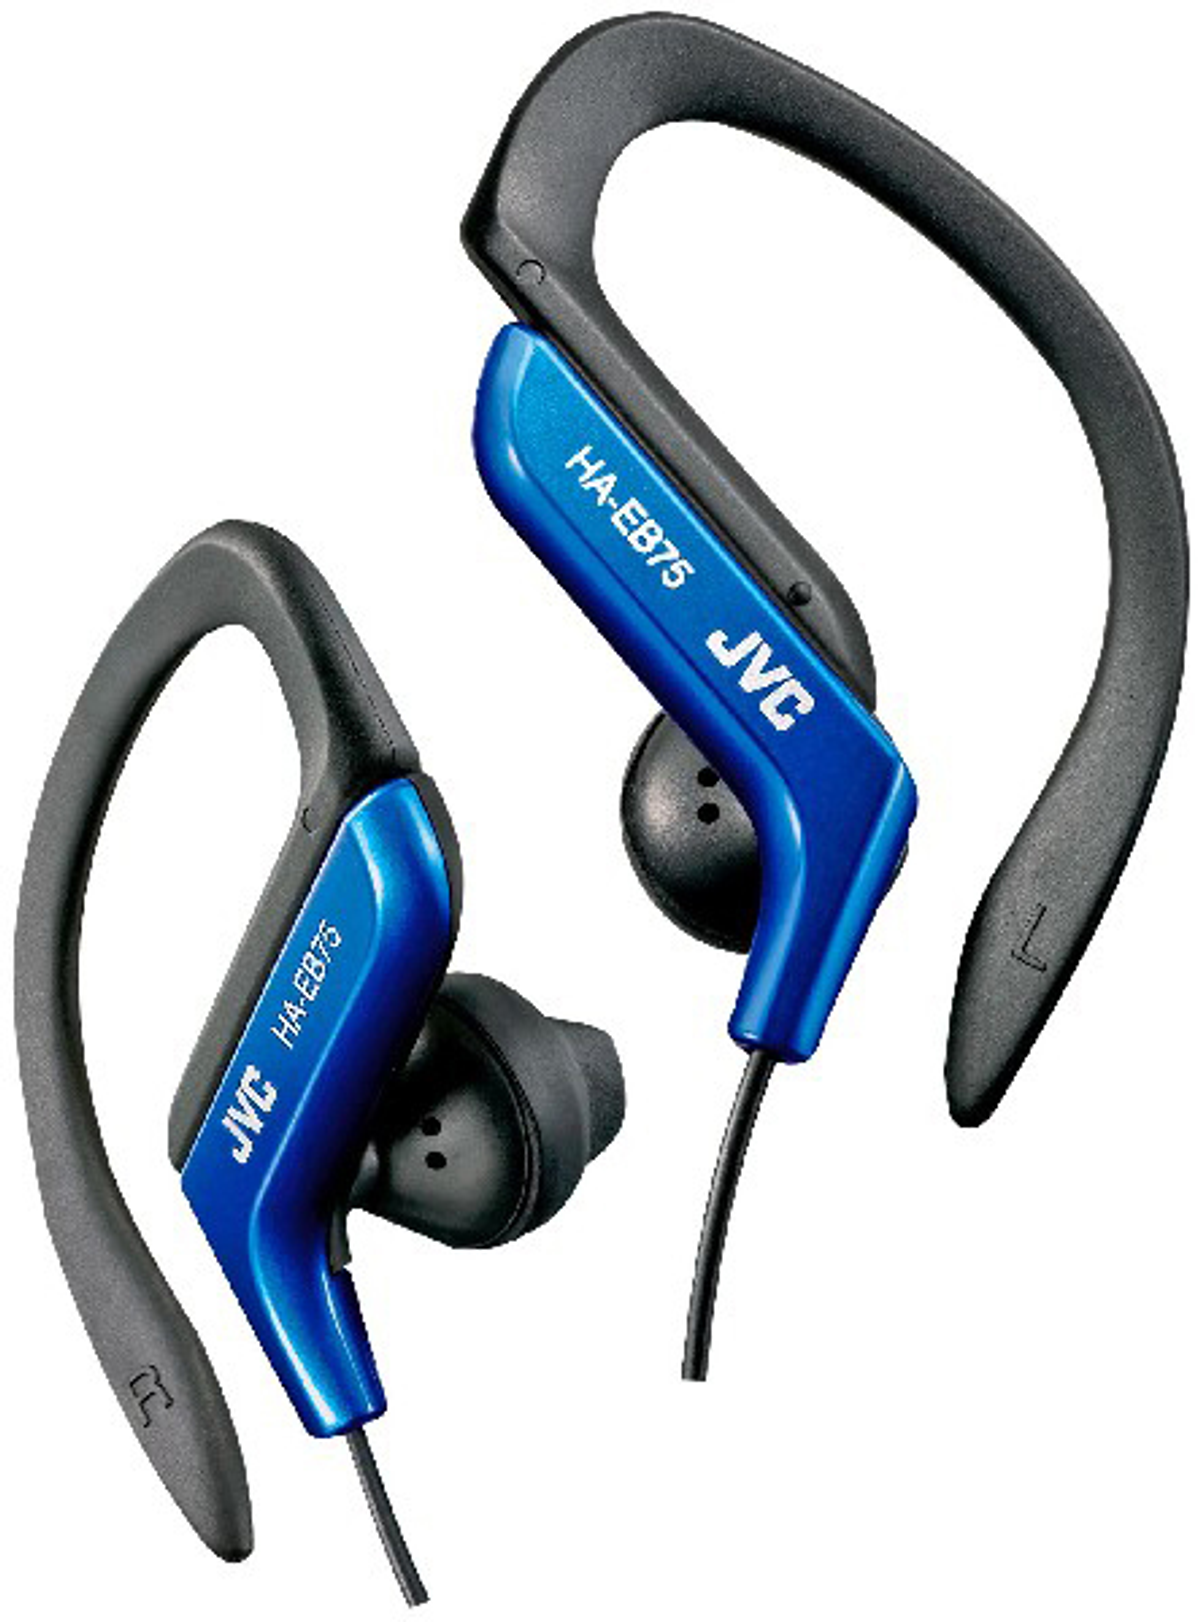 Jvc Auriculares Deportivos eb75 haeb75 bl haeb75ae con cable y clip resistente salpicaduras azul ear haeb75a